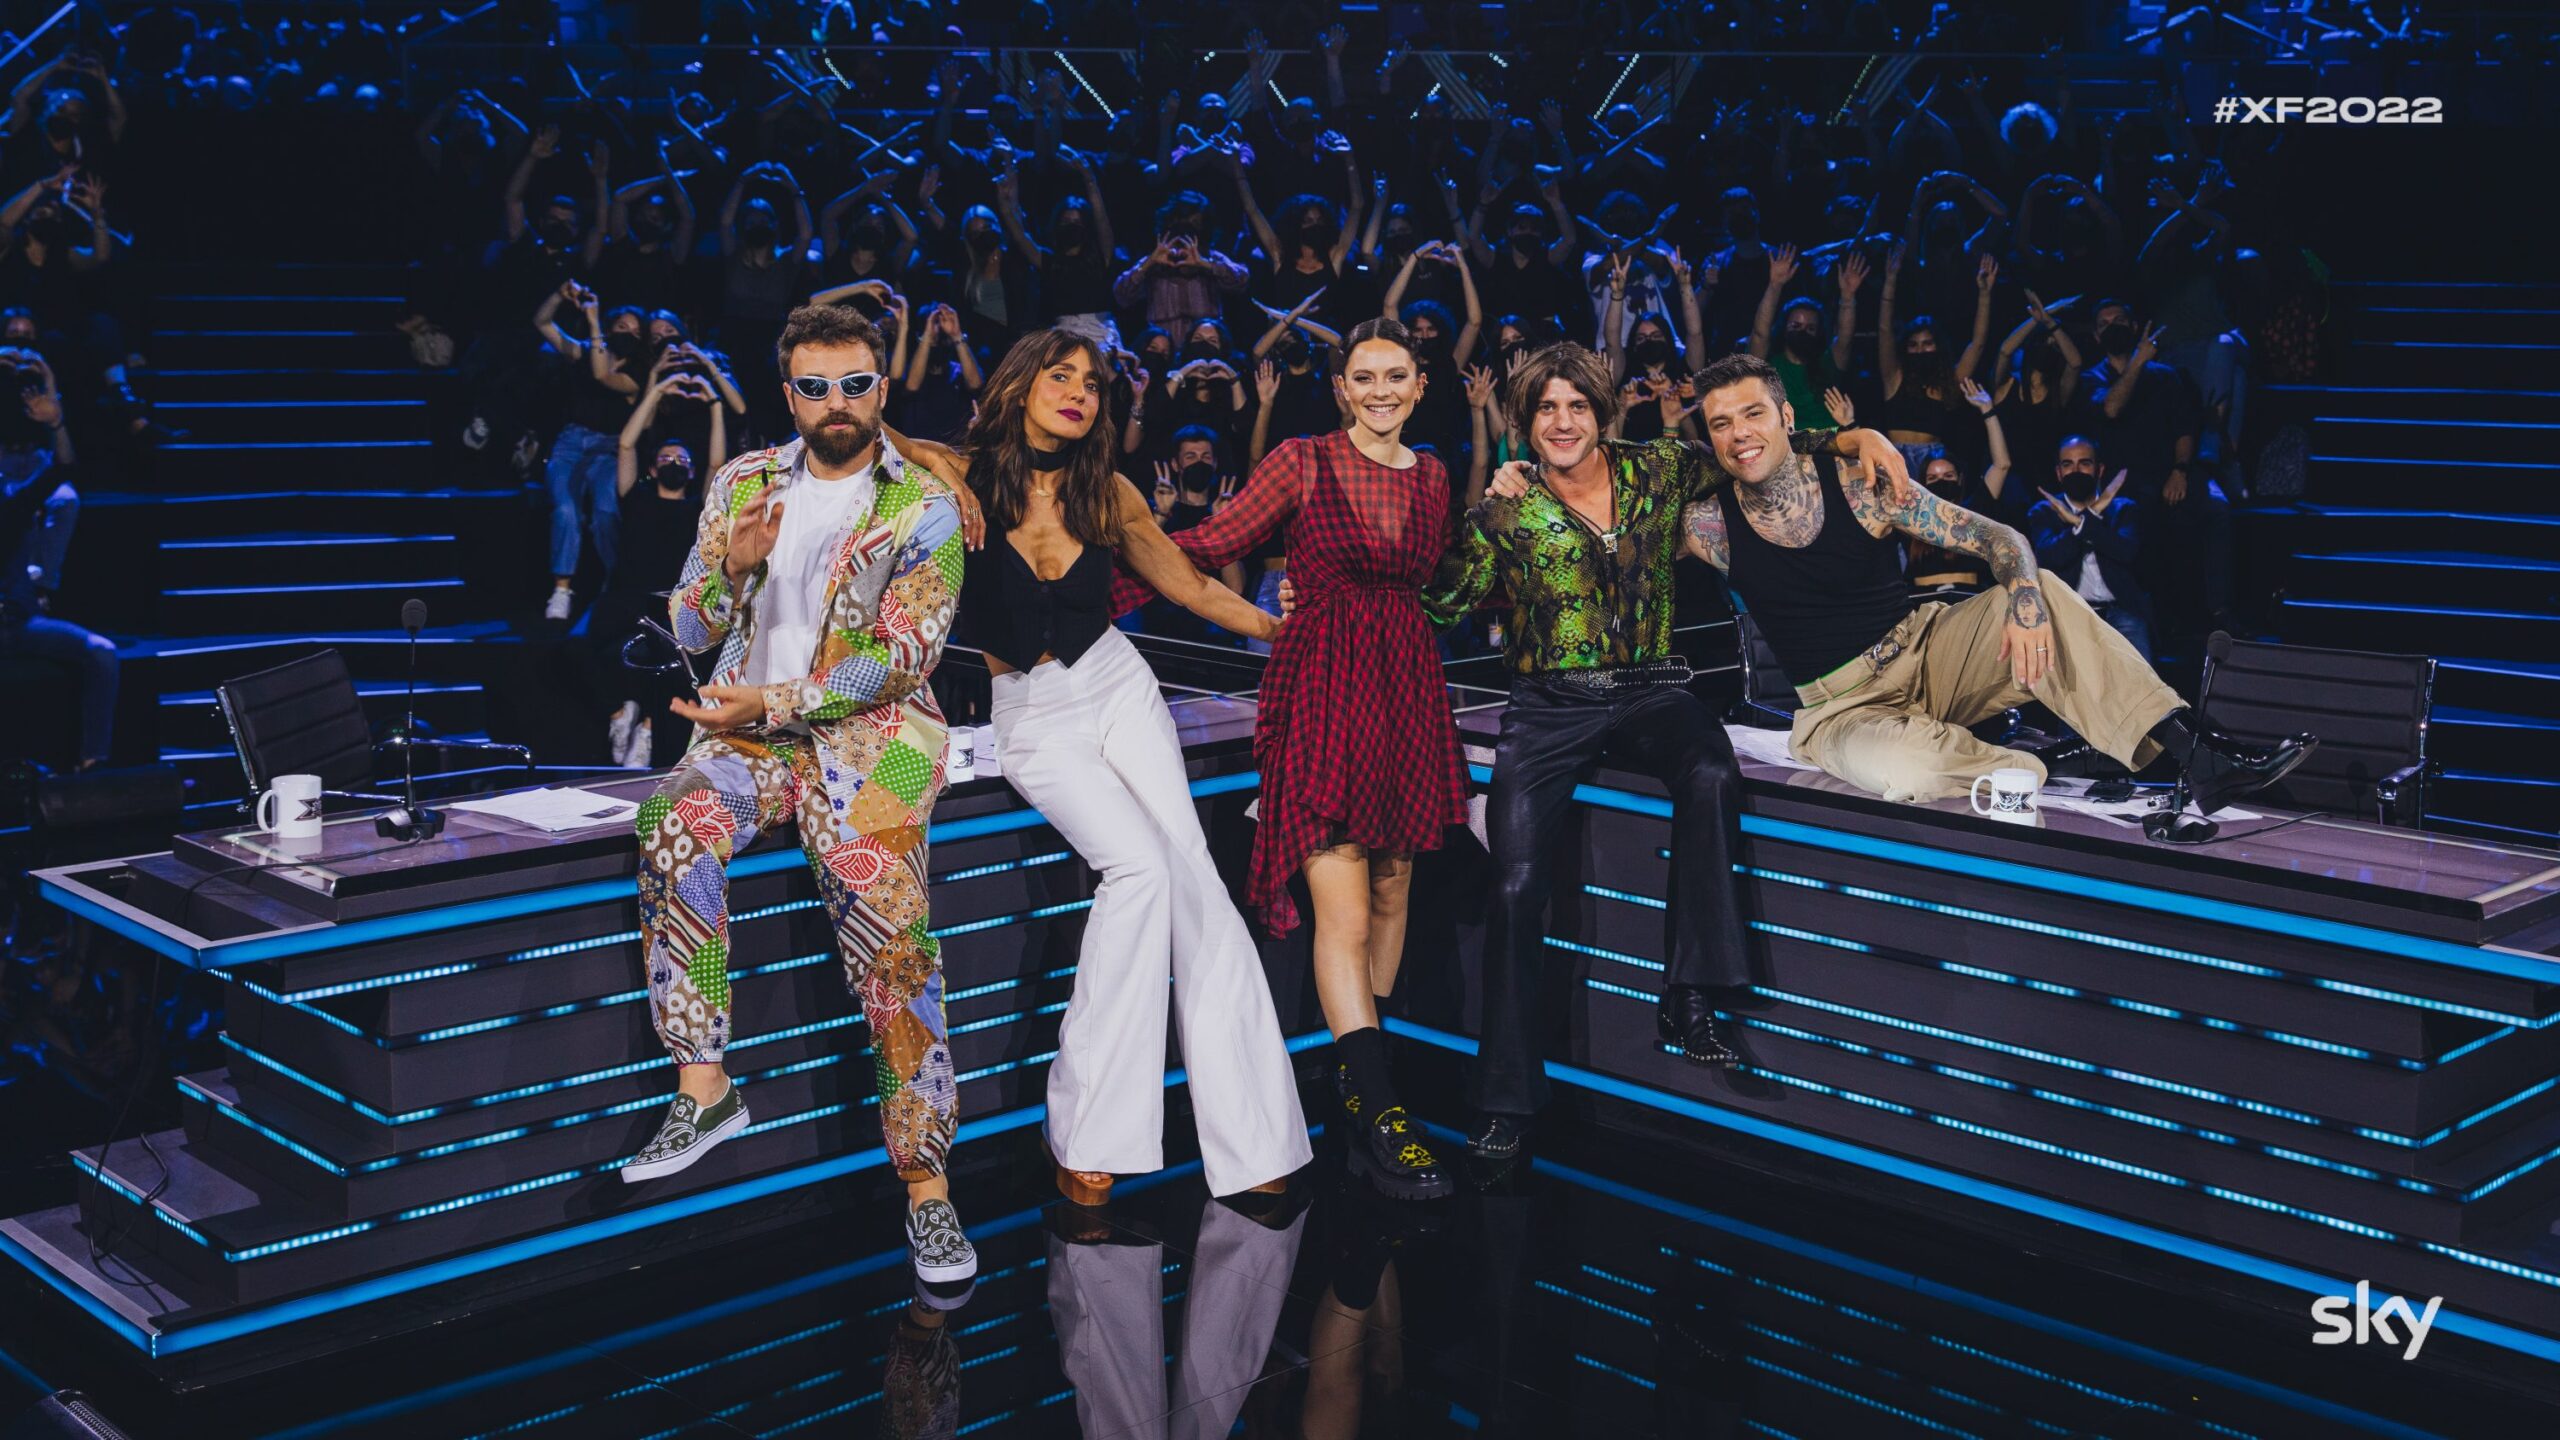 X-Factor 16, ottava puntata. Continua anche sulla free la nuova edizione del talent show condotto da Francesca Michielin, in onda su Tv8